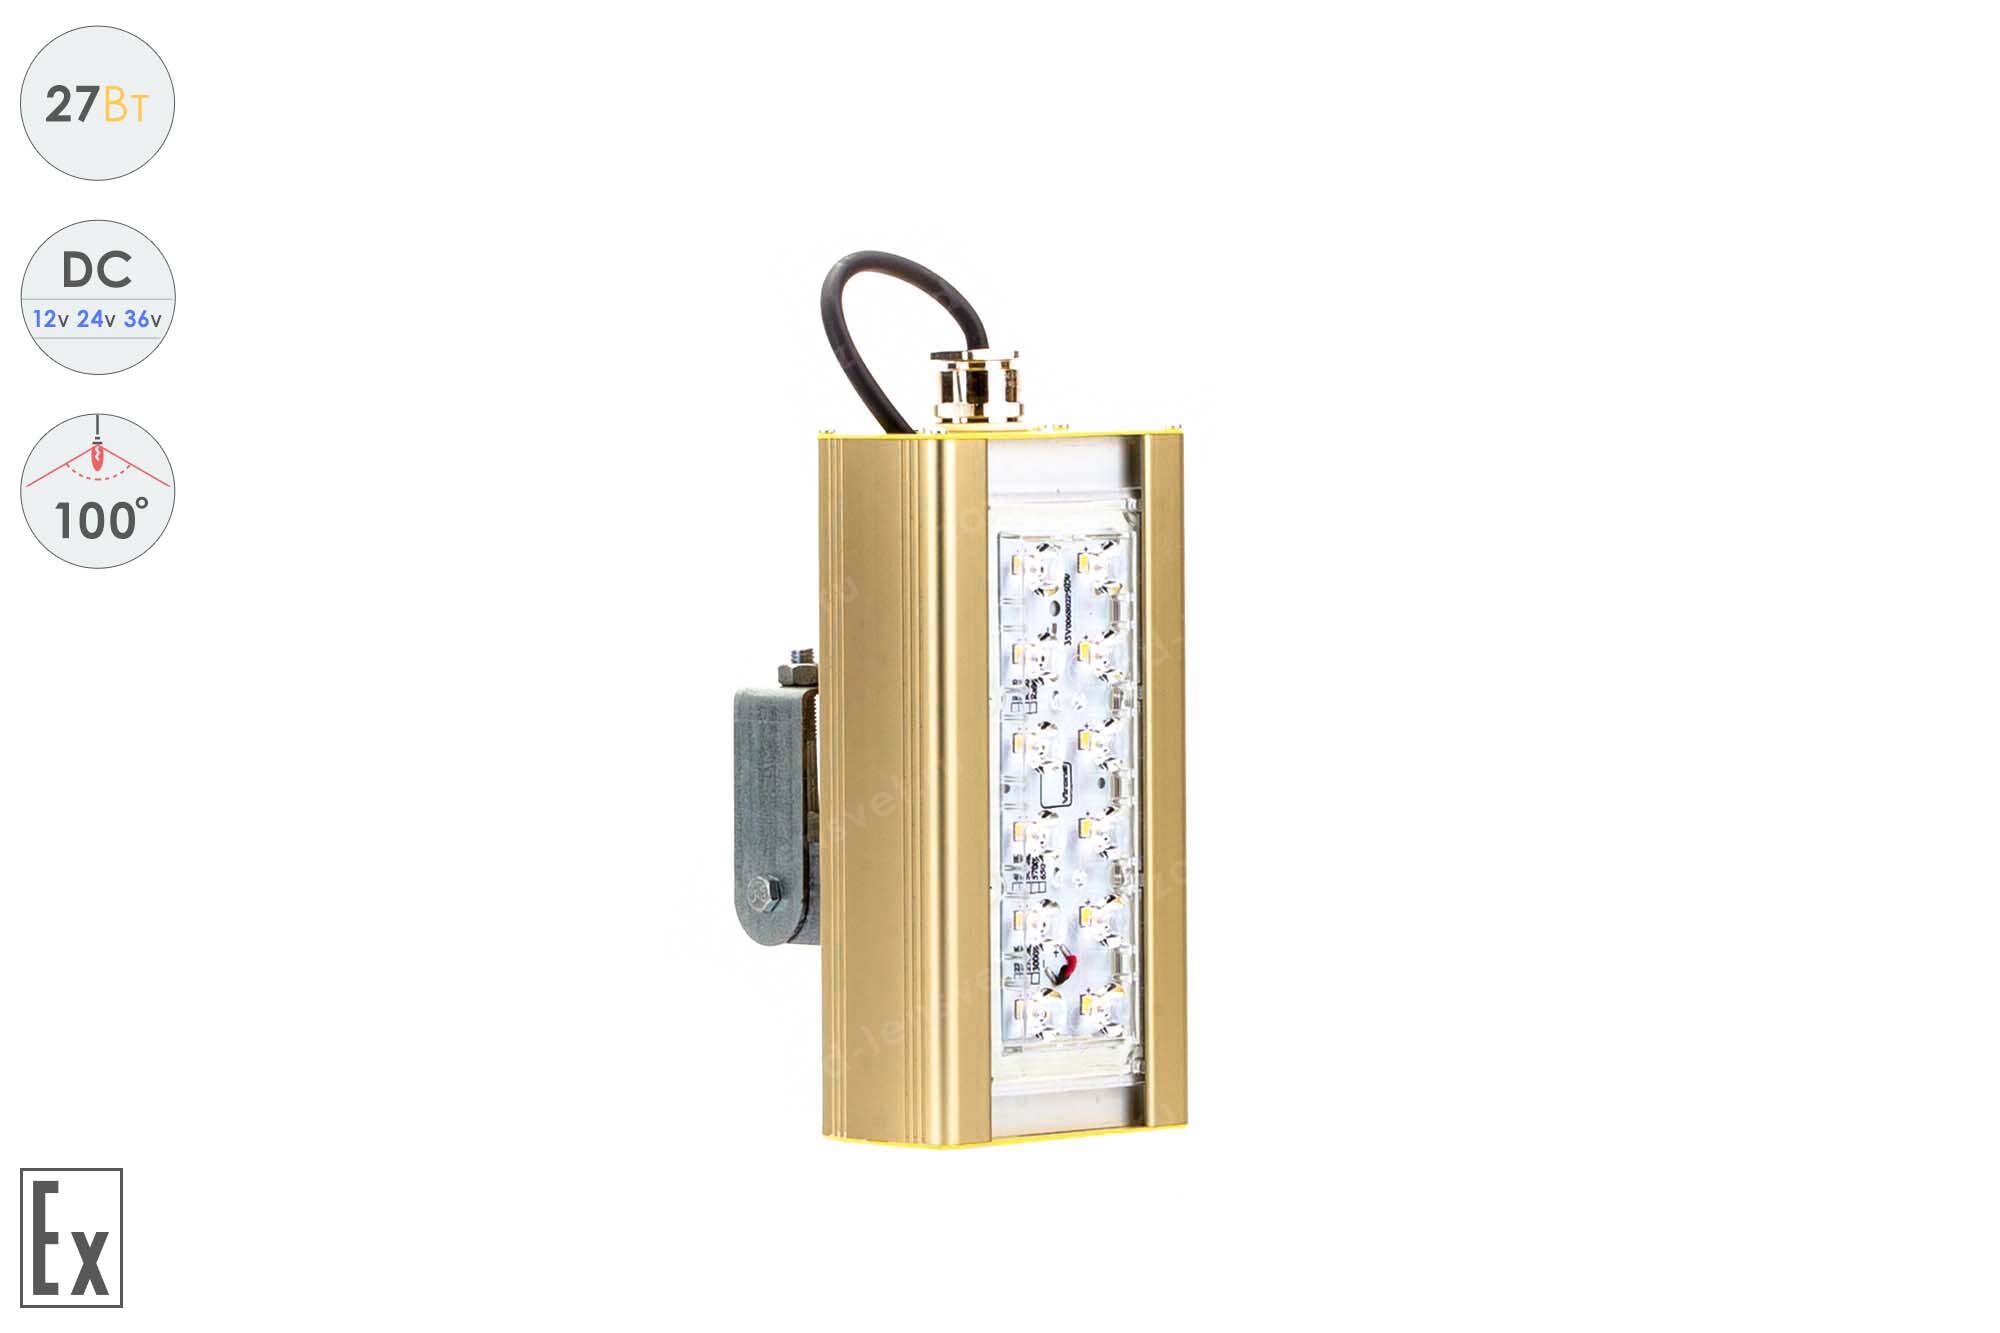 Светодиодный светильник Низковольтный Прожектор Взрывозащищенный GOLD, универсальный U-1, 27 Вт, 100°